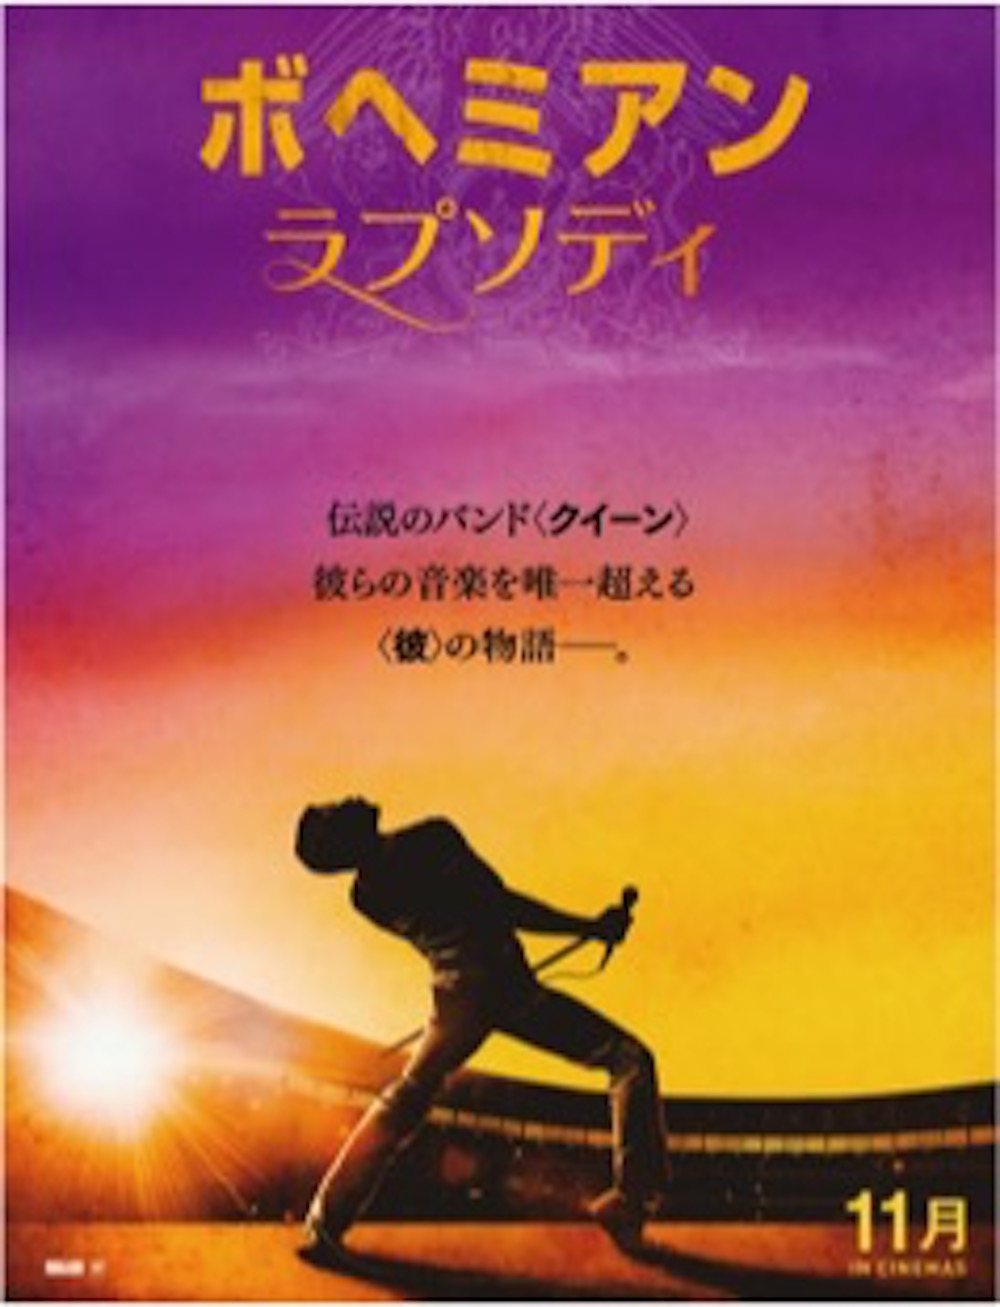 クイーン、伝記映画「ボヘミアン・ラプソディ」の日本公開が決定